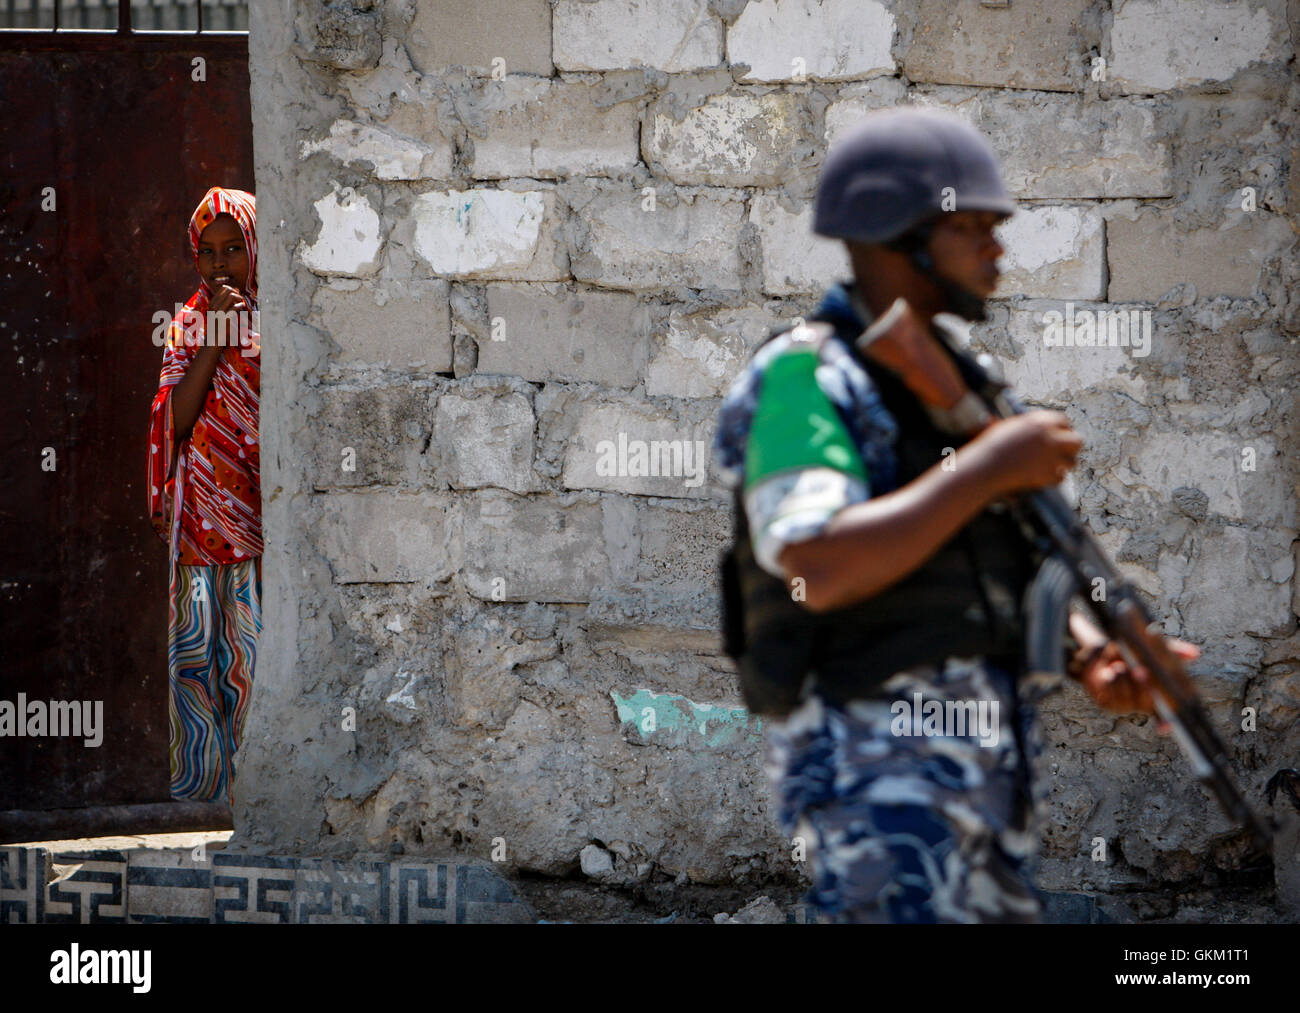 SOMALIA, MOGADISHU: En un panfleto foto tomada y liberado por el Grupo Africano Europea-estados unidas, Equipo de Apoyo a la información 09 de noviembre, una joven somalí luce como un oficial de la policía de Uganda que sirve como parte de una unidad de policía constituida (FPU), con la misión de la unión de la Unión Africana en Somalia (AMISOM) camina pasado durante una patrulla a pie en la Kaa'ran el distrito en la capital somalí de Mogadishu. La AMISOM FPUs están colaborando con sus homólogos de la Policía Somalí (SPF) para ayudar a proporcionar seguridad en Mogadishu, además de la capacitación y asesoramiento de la SPF en técnicas policiales y prácticas. AU-ONU I Foto de stock